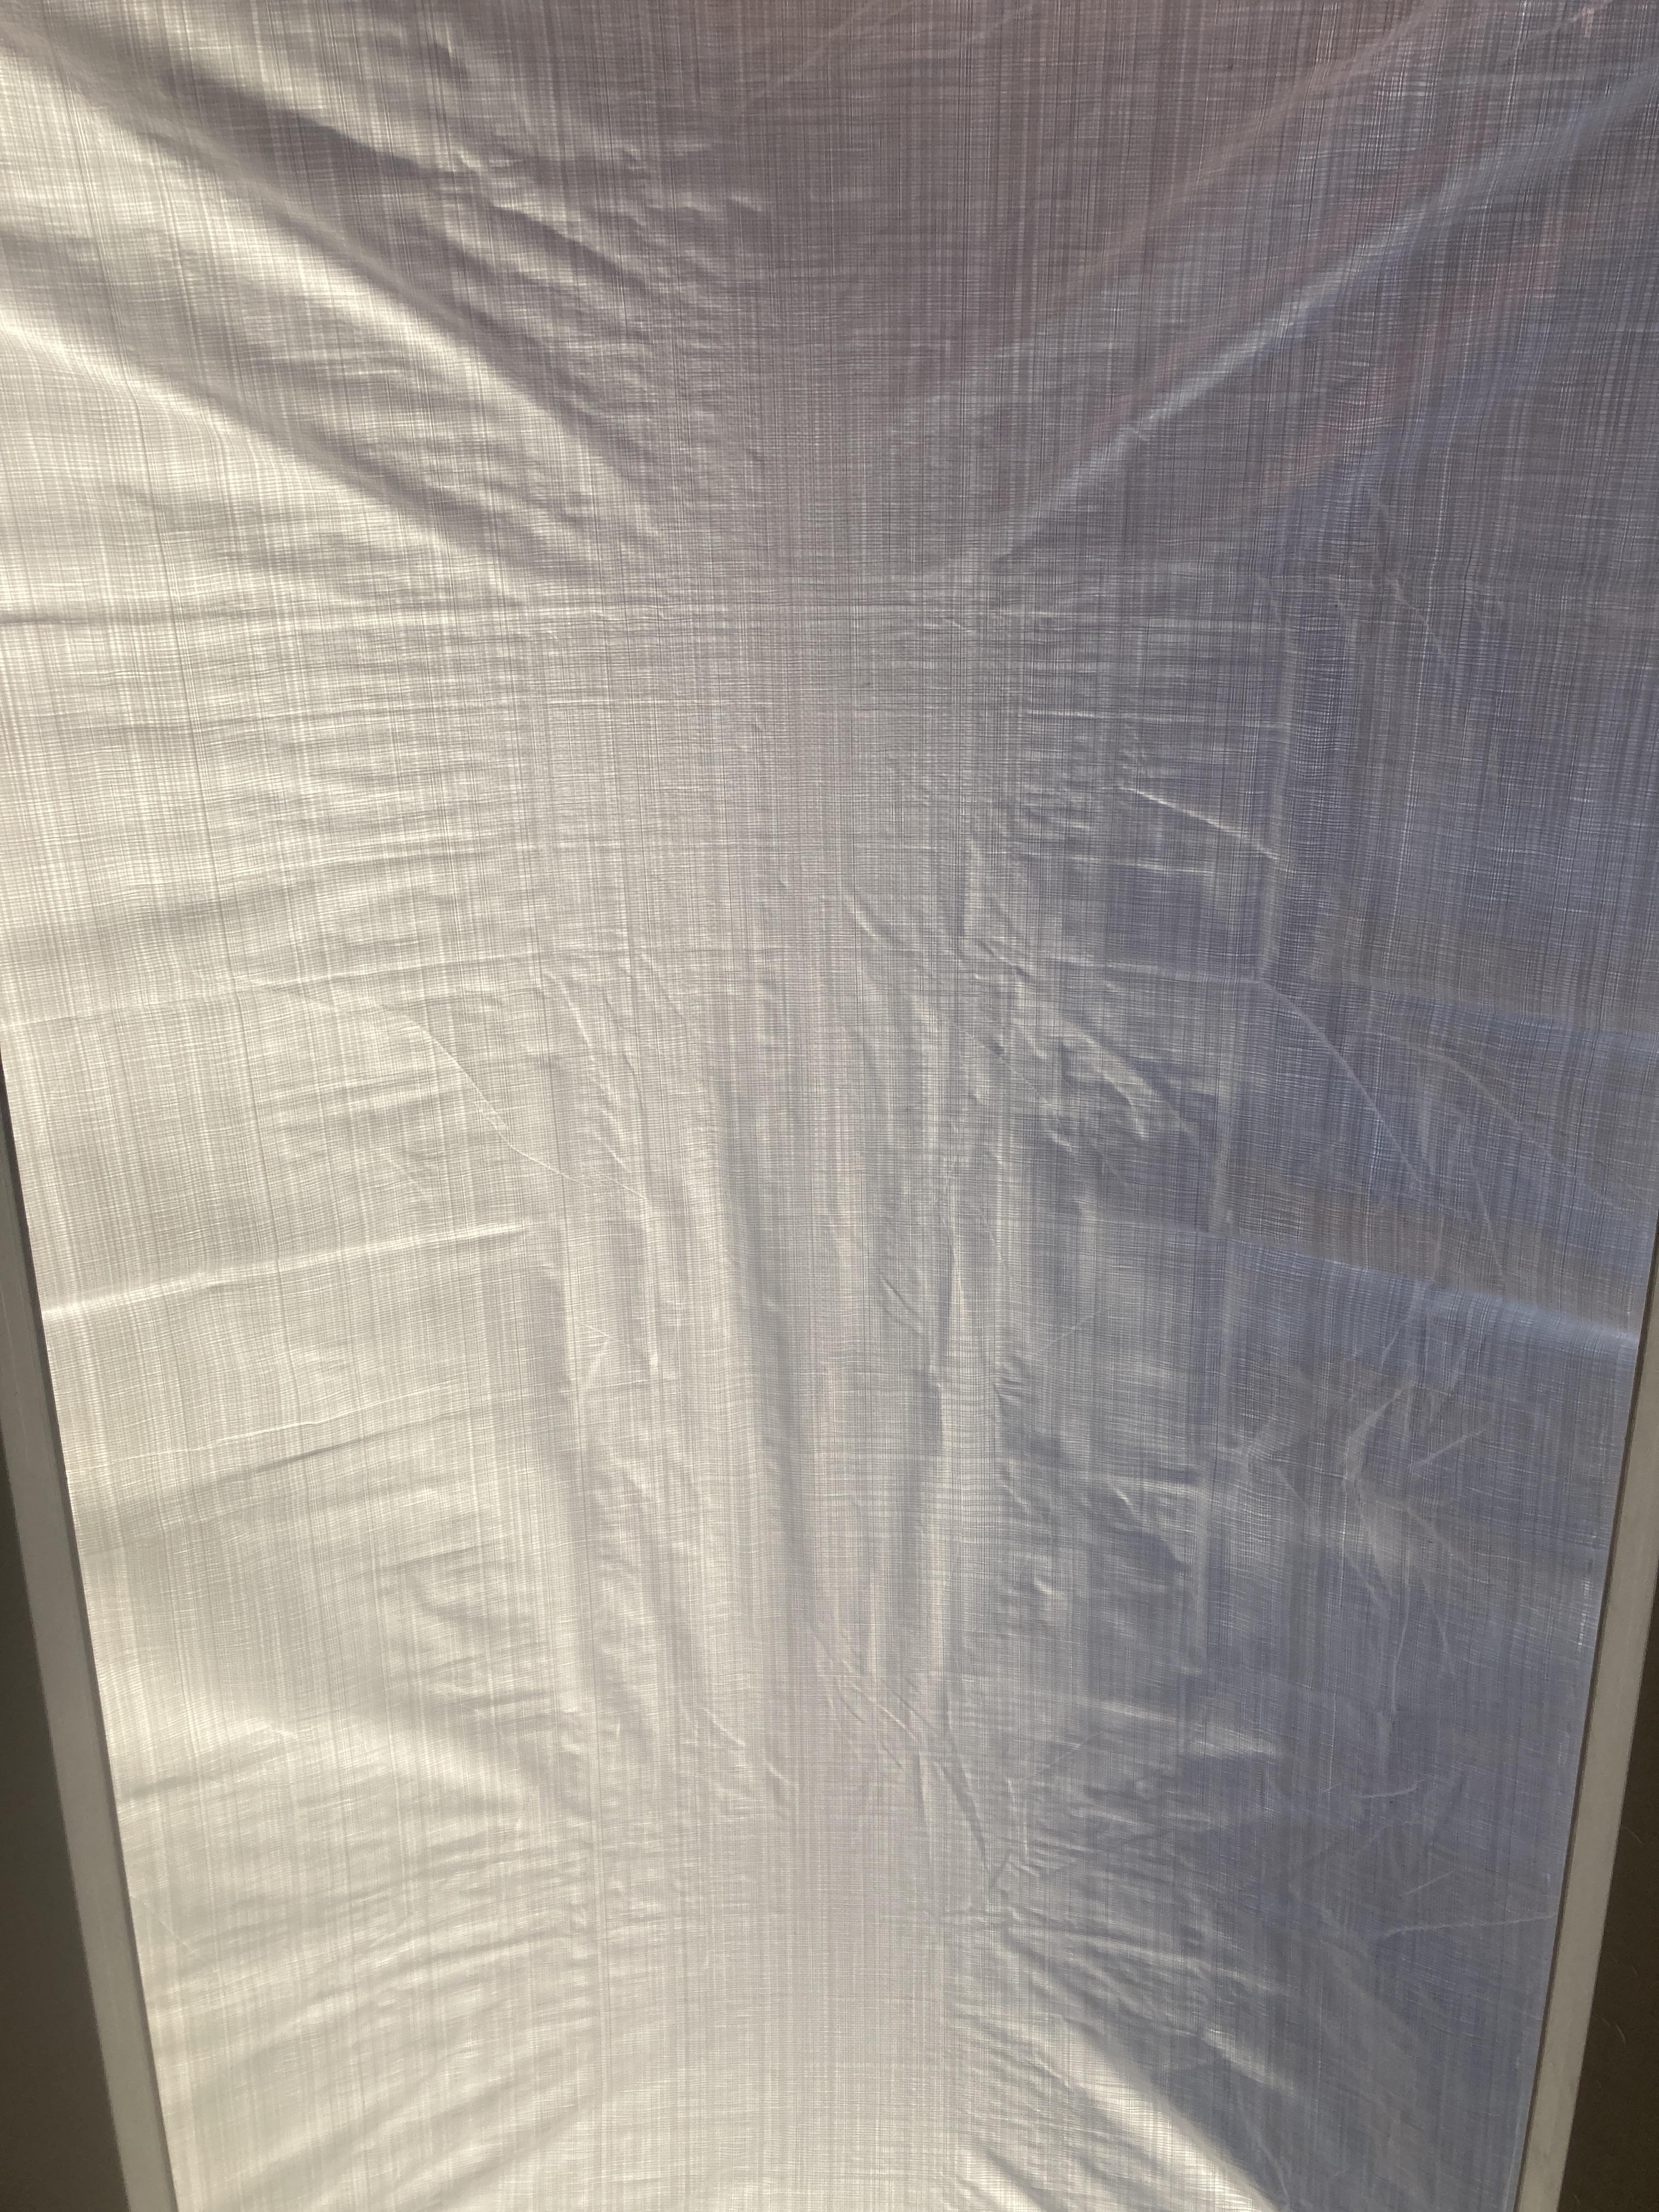 Afdekzeil wit standaard (150gr/m²) gebruik: Om mijn lichtkoepels af te dekken voor de zon 